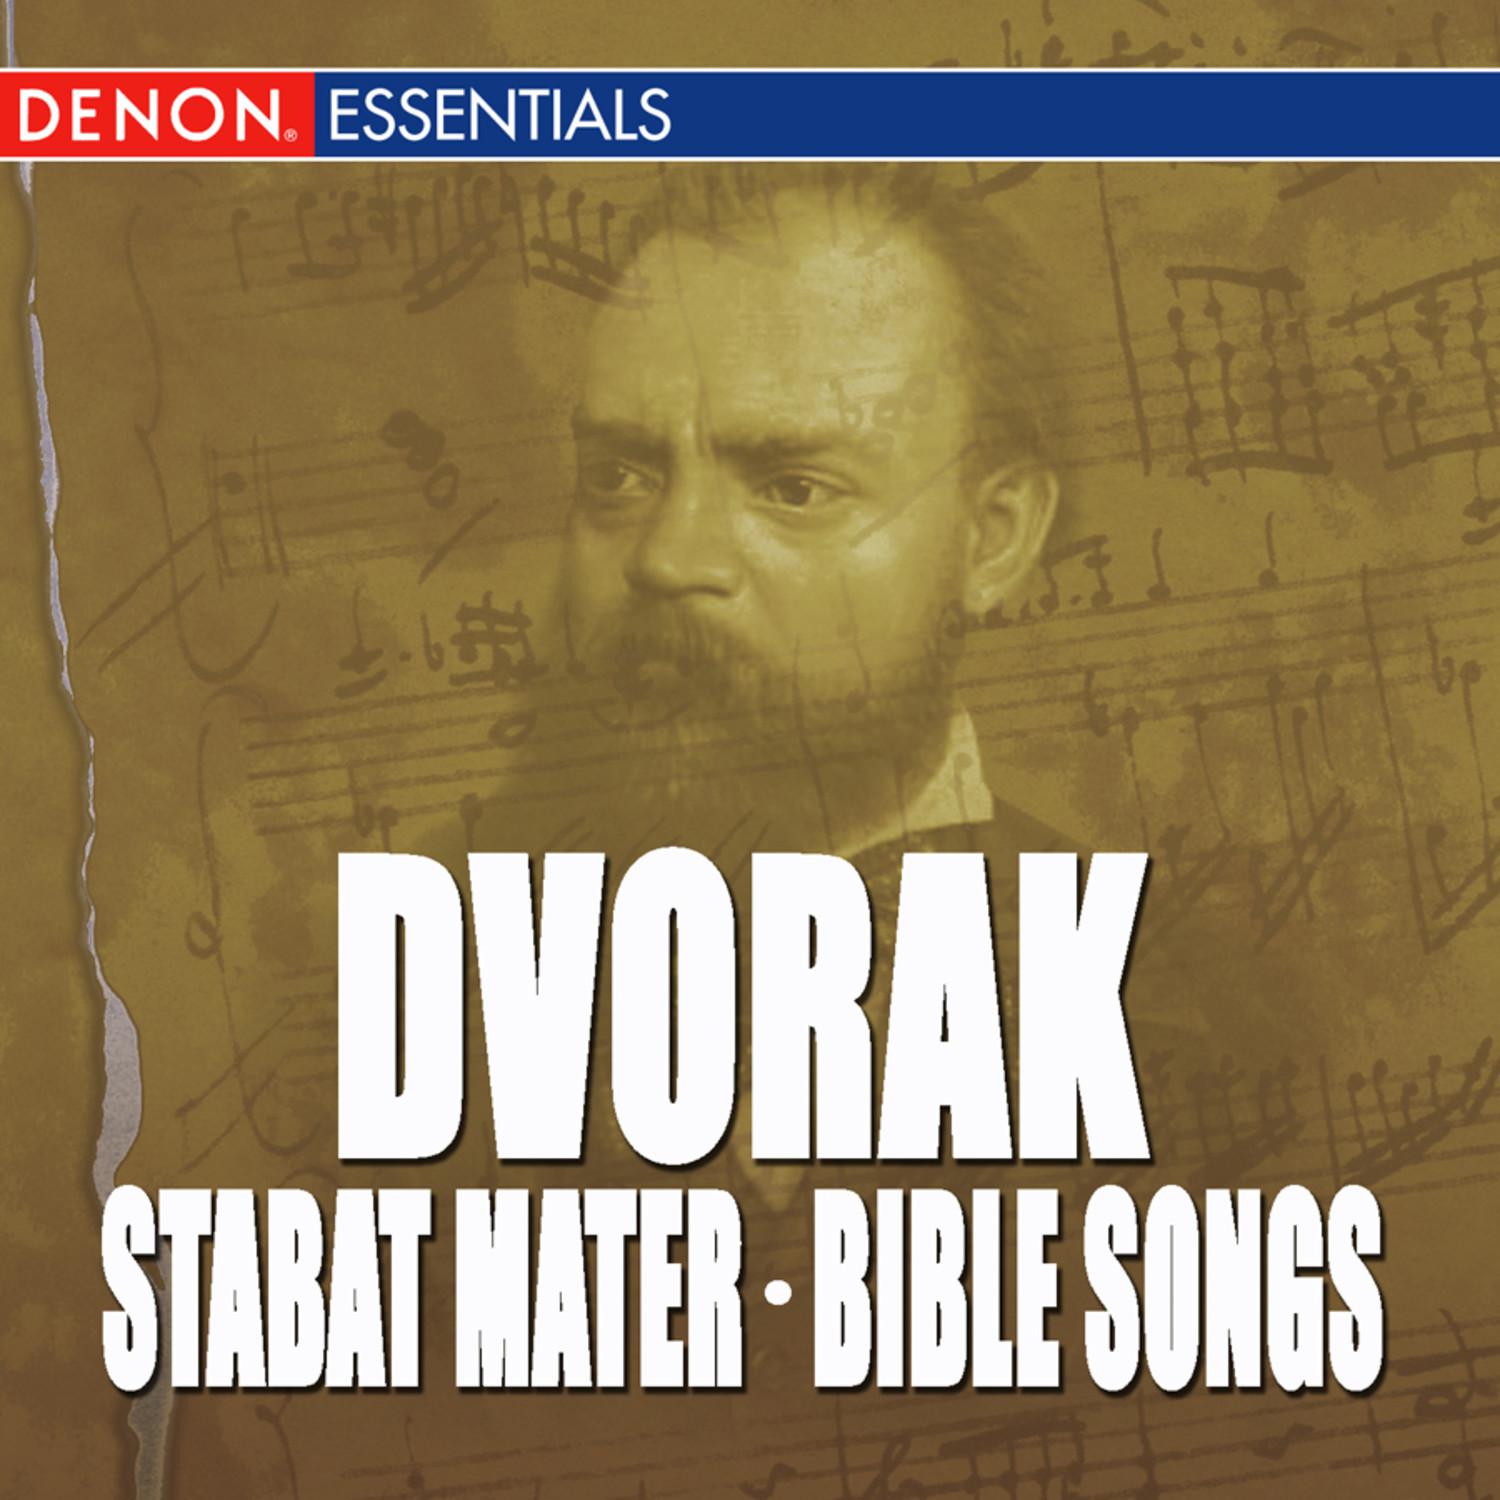 Dvorak: Stabat Mater, Op. 58 - Bible Songs, Op. 99